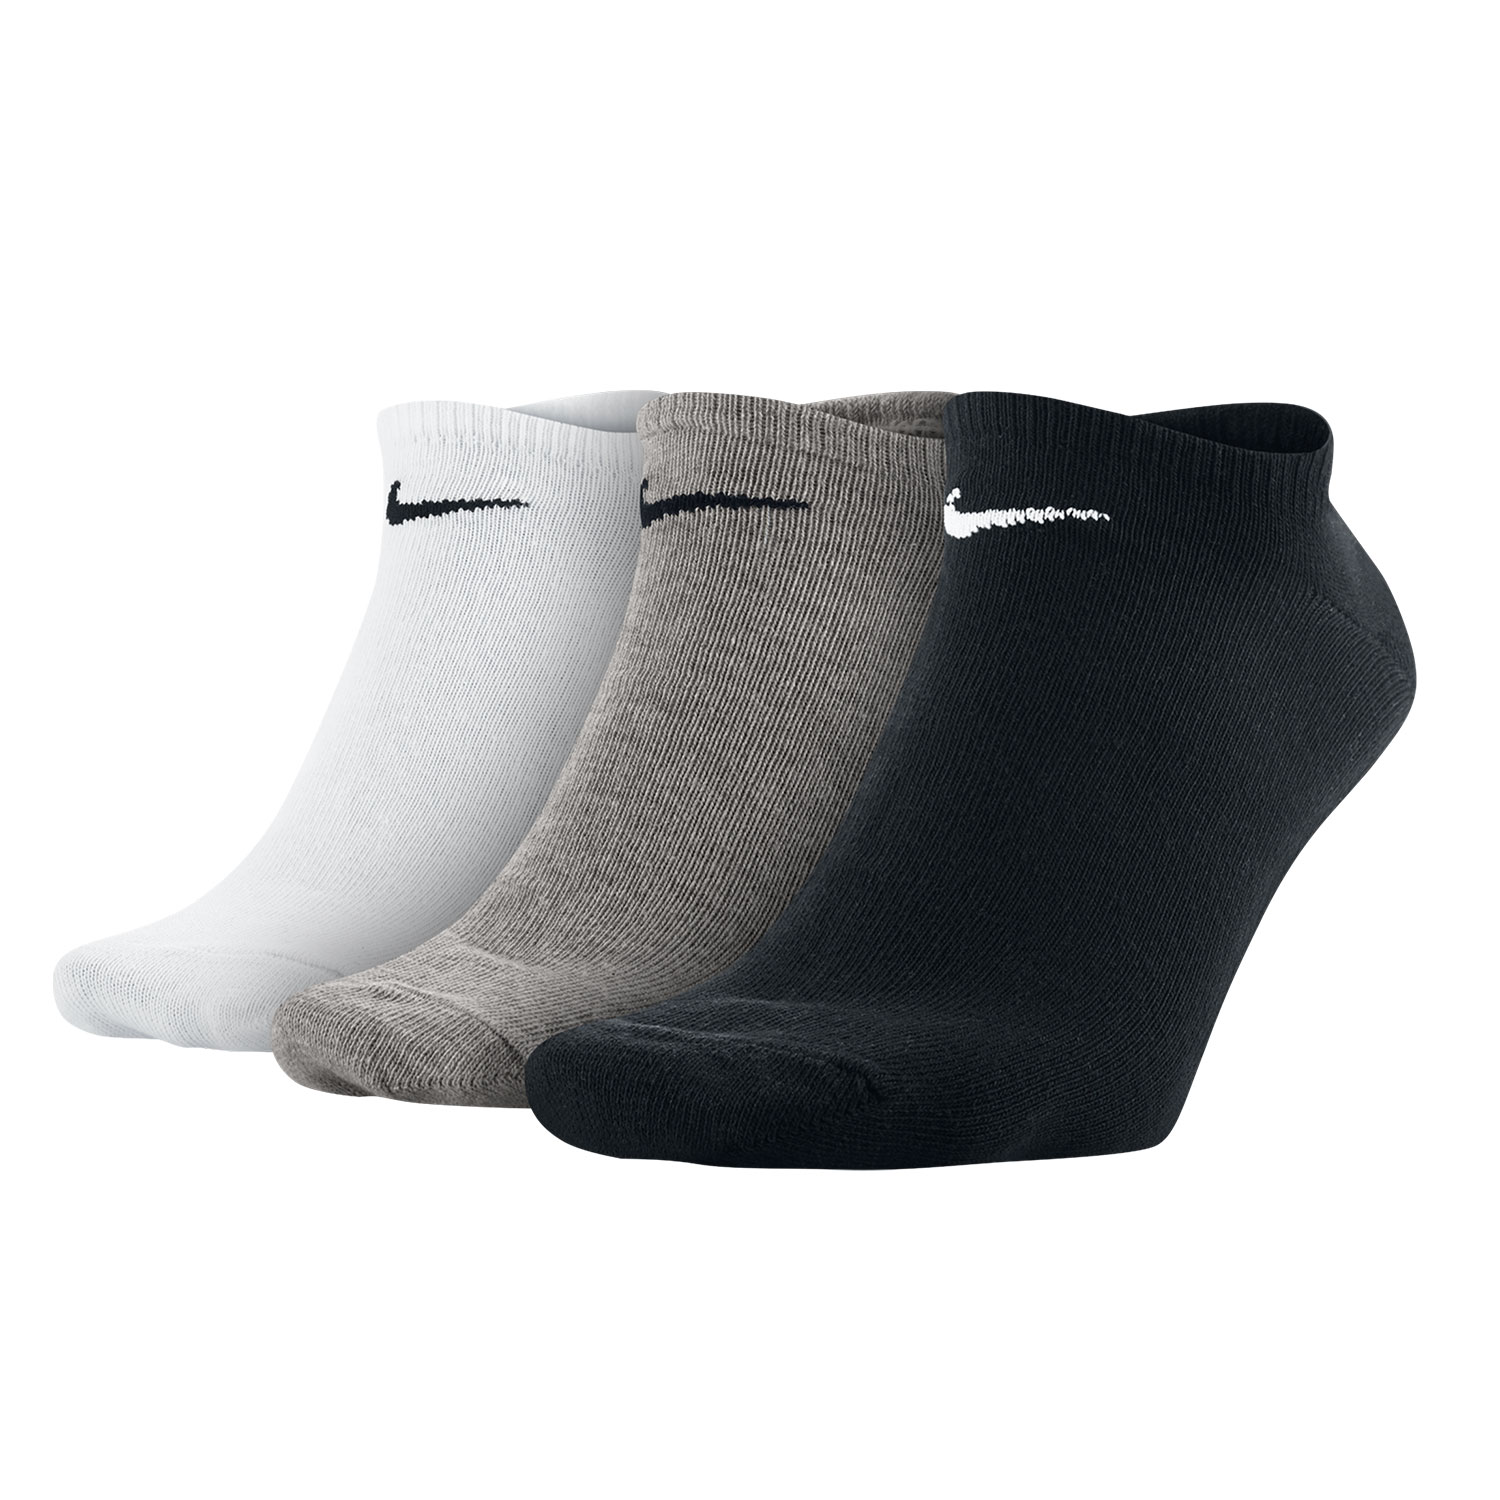 Surtido Uva Medición Nike Value No Show Calcetines Tenis - White/Grey/Black